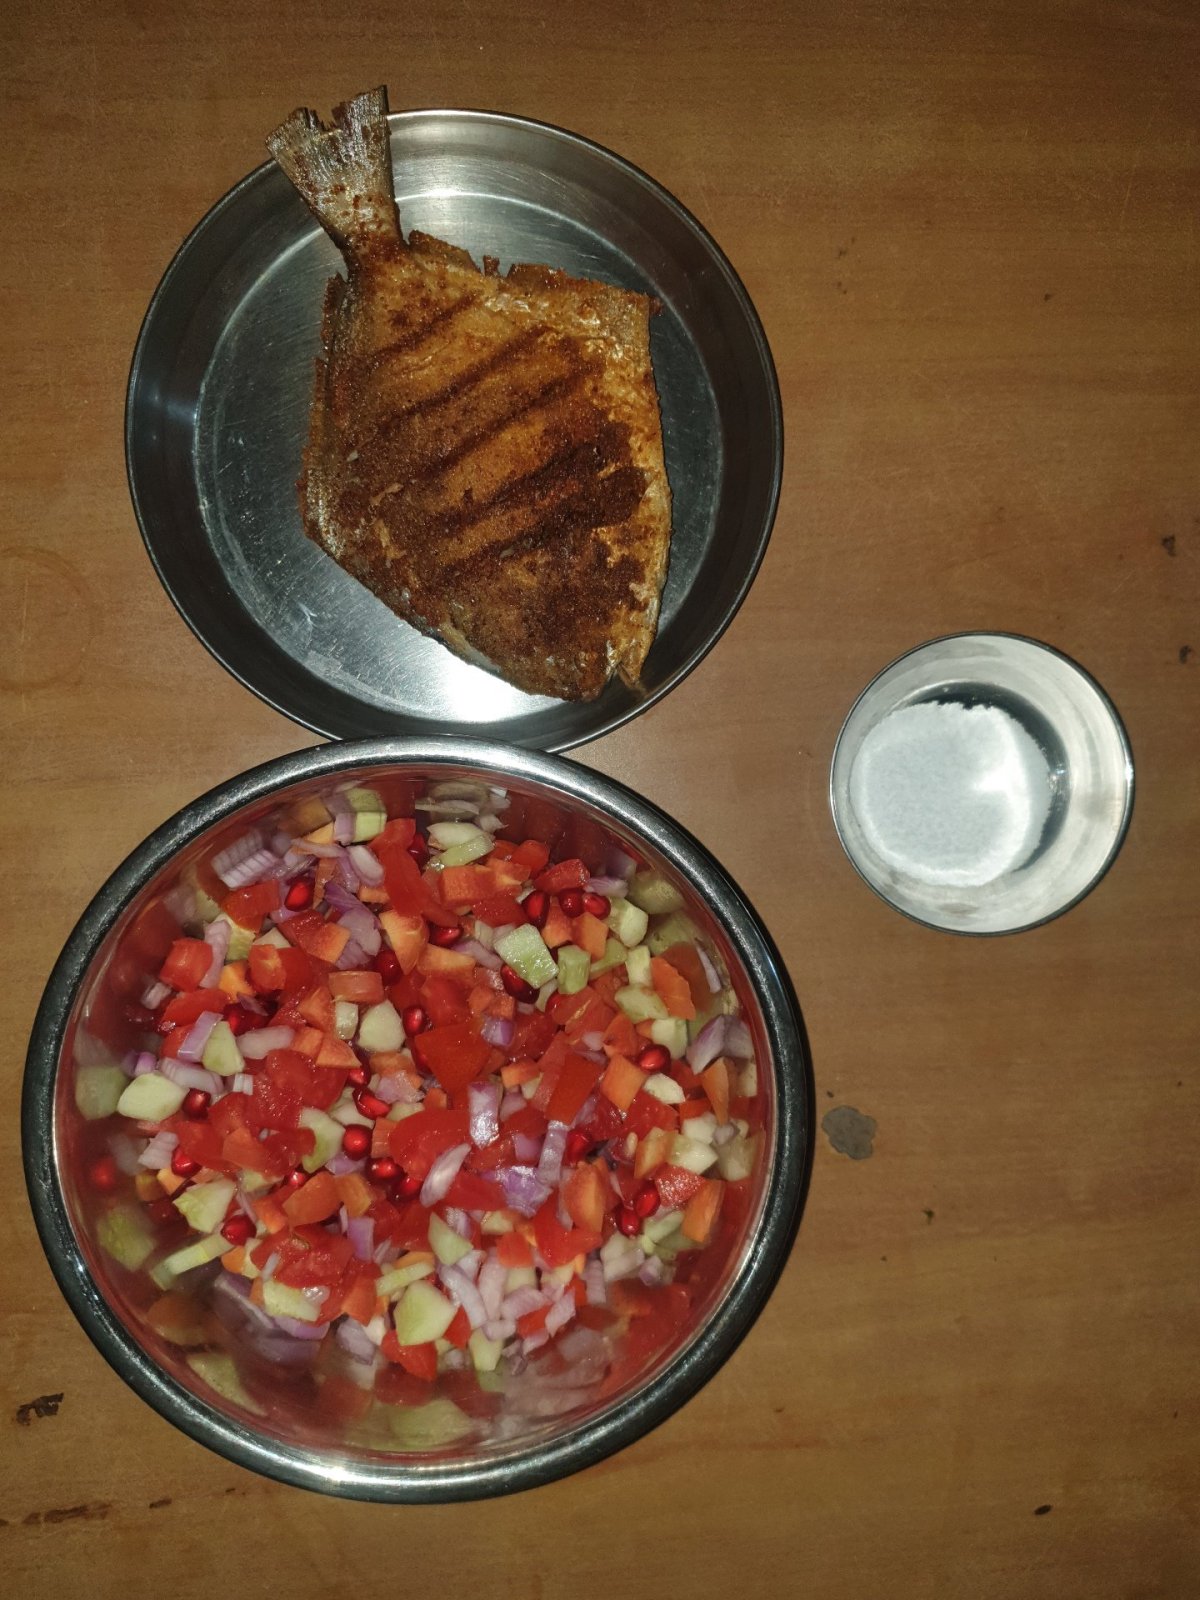 Na štědrovečerní večeři jsem si přál rybu z místních vod a zeleninový salát, který byl vyšperkován granátovým jablkem